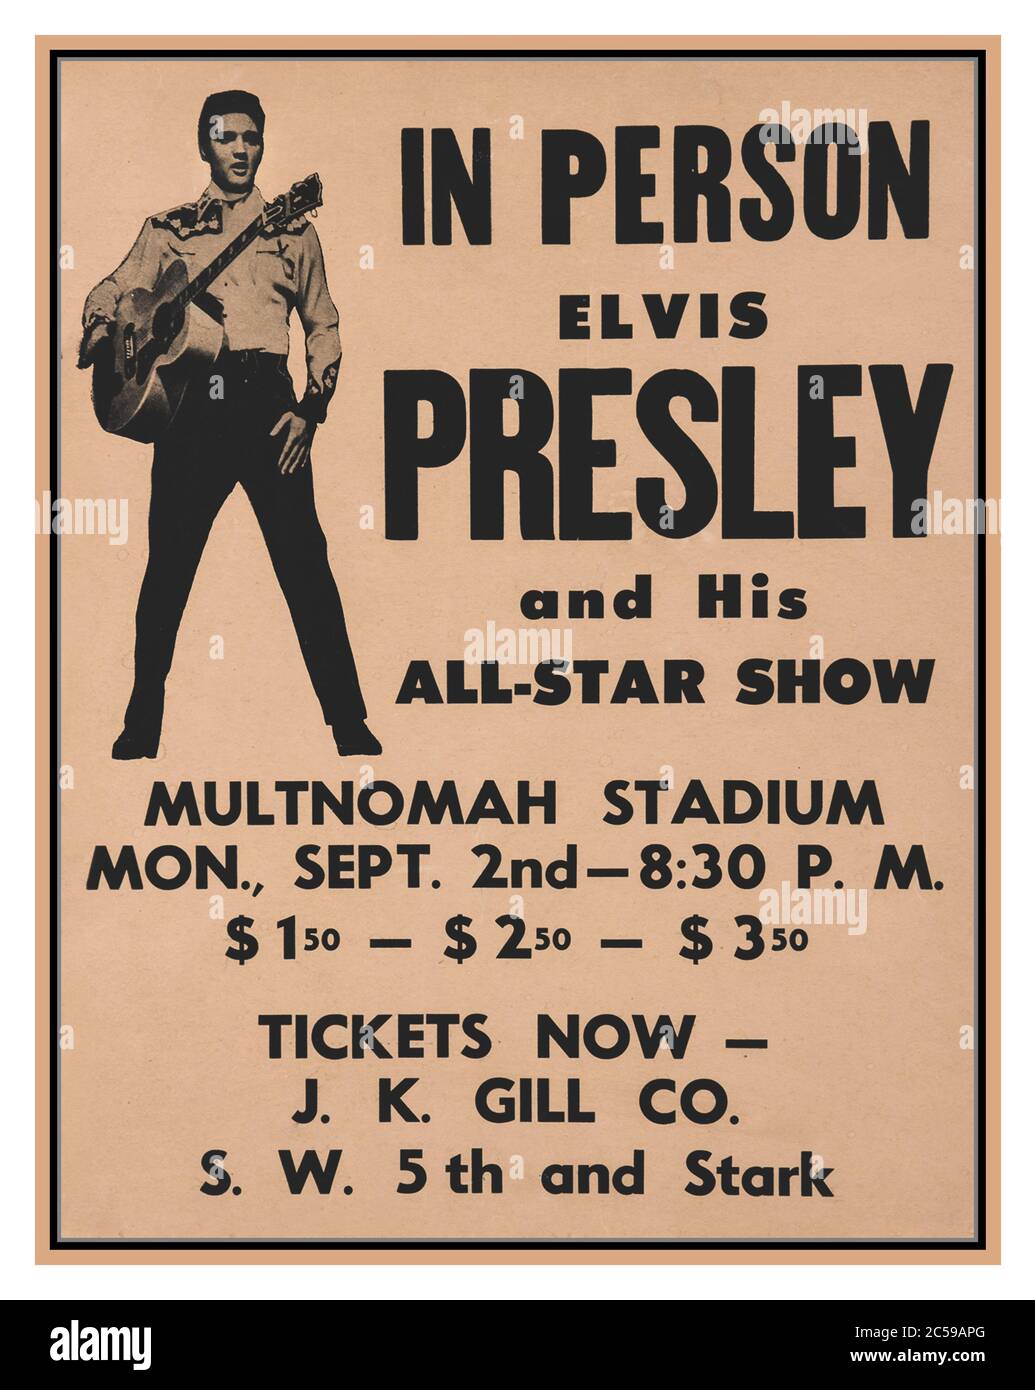 Affiche du spectacle live des étoiles Elvis Presley datant des années 1950 2 septembre 1957, Elvis Presley, Scotty Moore, Bill Black et DJ Fontana ont joué un spectacle au Multnomah Civic Stadium comme dernière étape dans une ville tourbillonnante de cinq, une visite de quatre jours du nord-ouest du Pacifique incluant Spokane, Vancouver, Tacoma, Et Seattle. Il ne s'agissait que de la deuxième tournée cette année-là et a été promu par Lee Gordon, qui avait promu la tournée précédente au printemps du Canada et dans le Midwest Banque D'Images